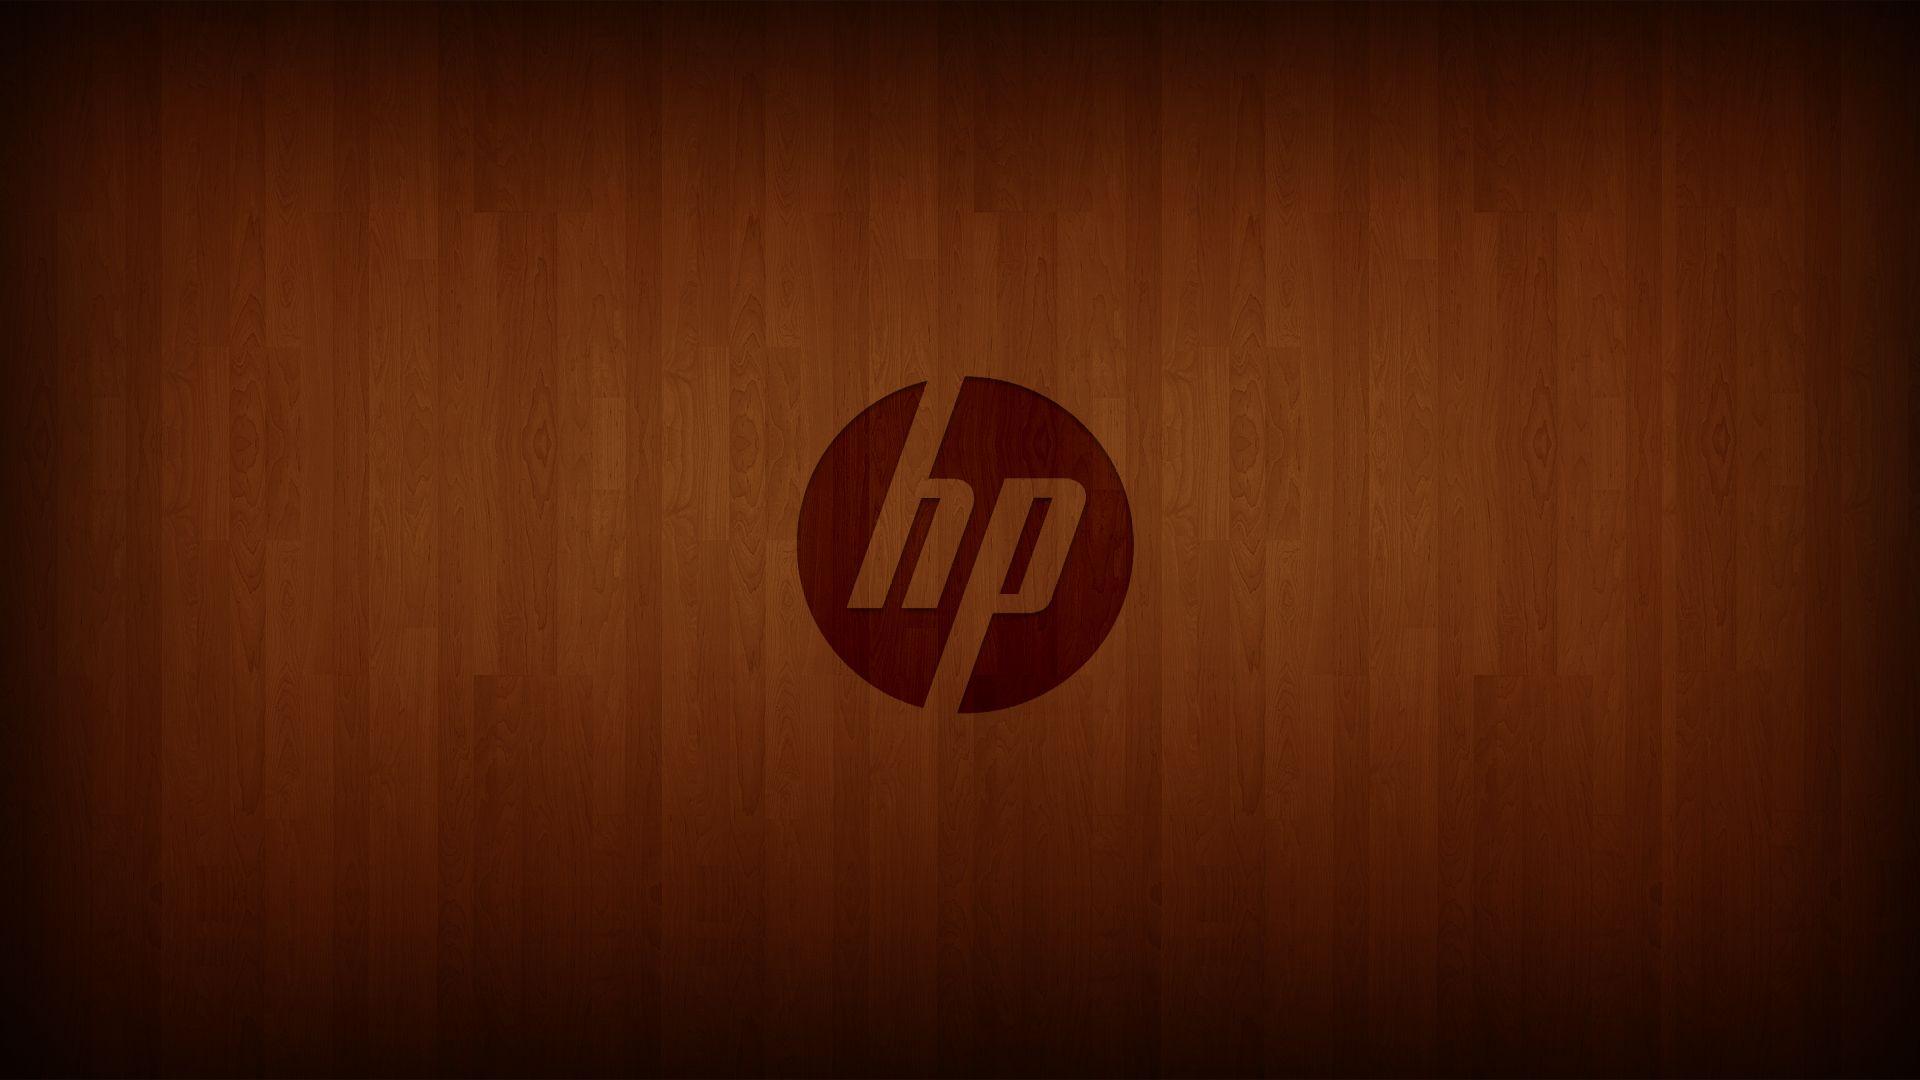 Cute HP Logo - Best Free HP 4K Ultra HD Wallpaper